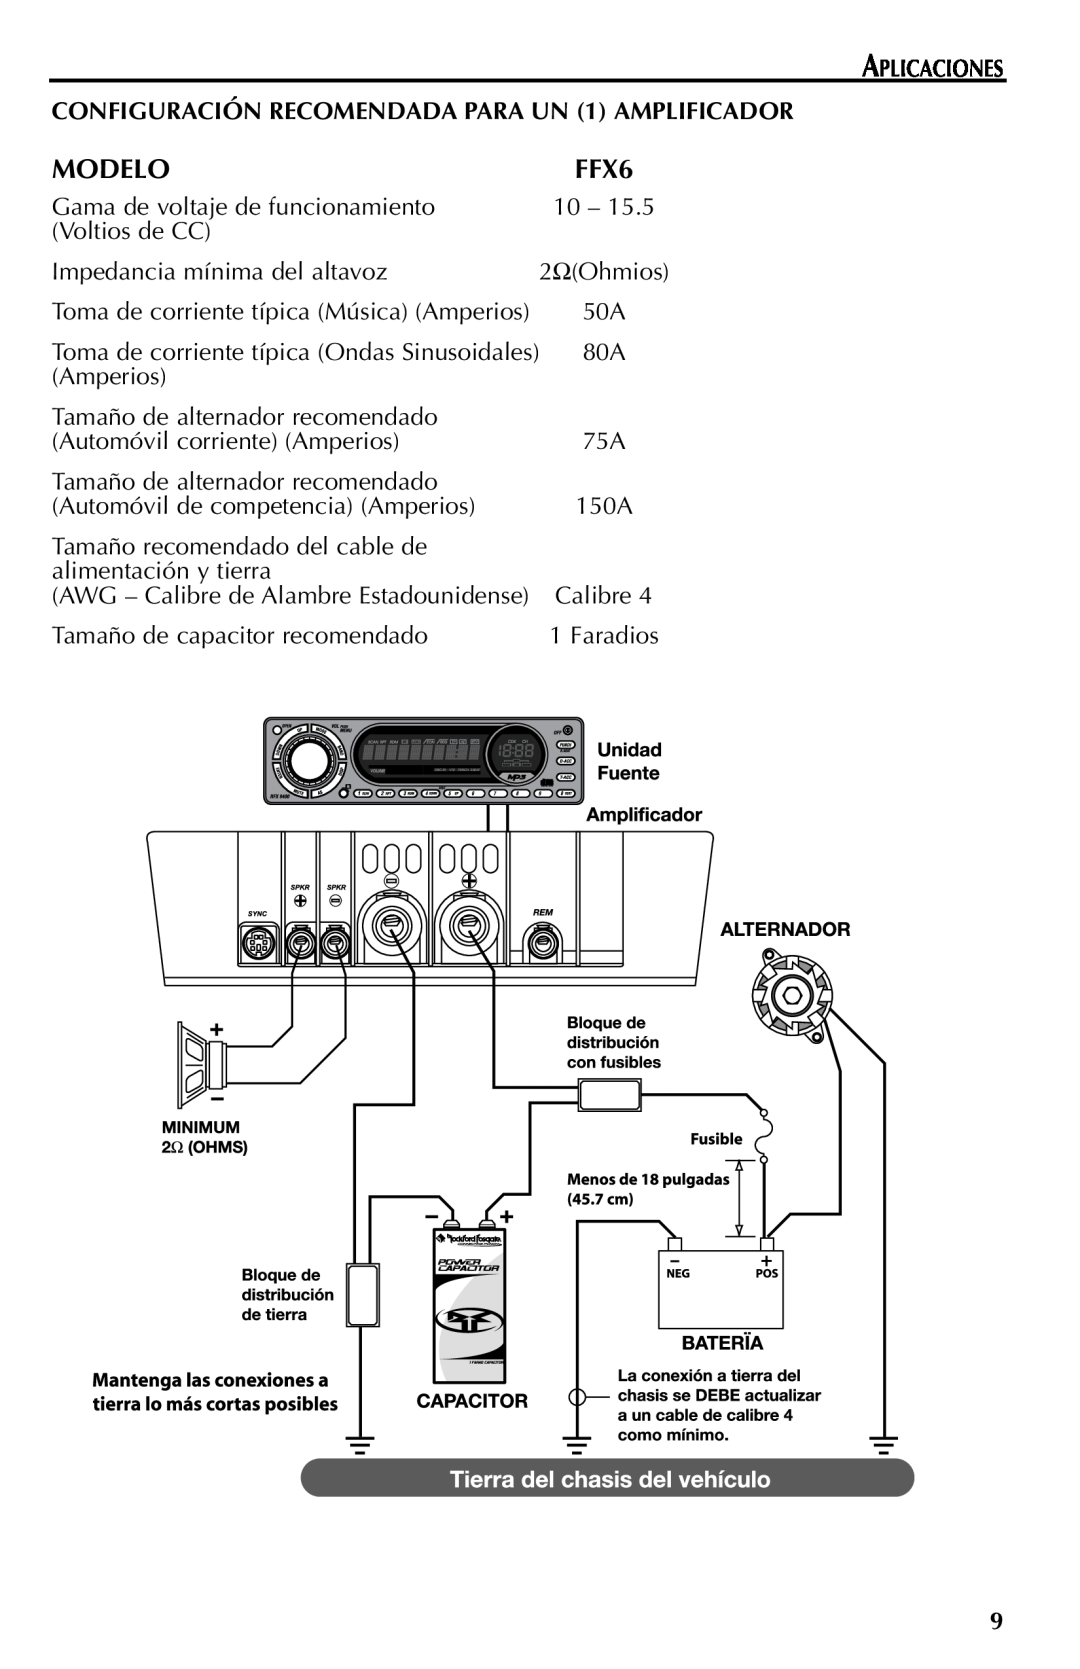 Rockford Fosgate FFX6 manual Modelo, Aplicaciones, CONFIGURACIÓN RECOMENDADA PARA UN 1 AMPLIFICADOR 